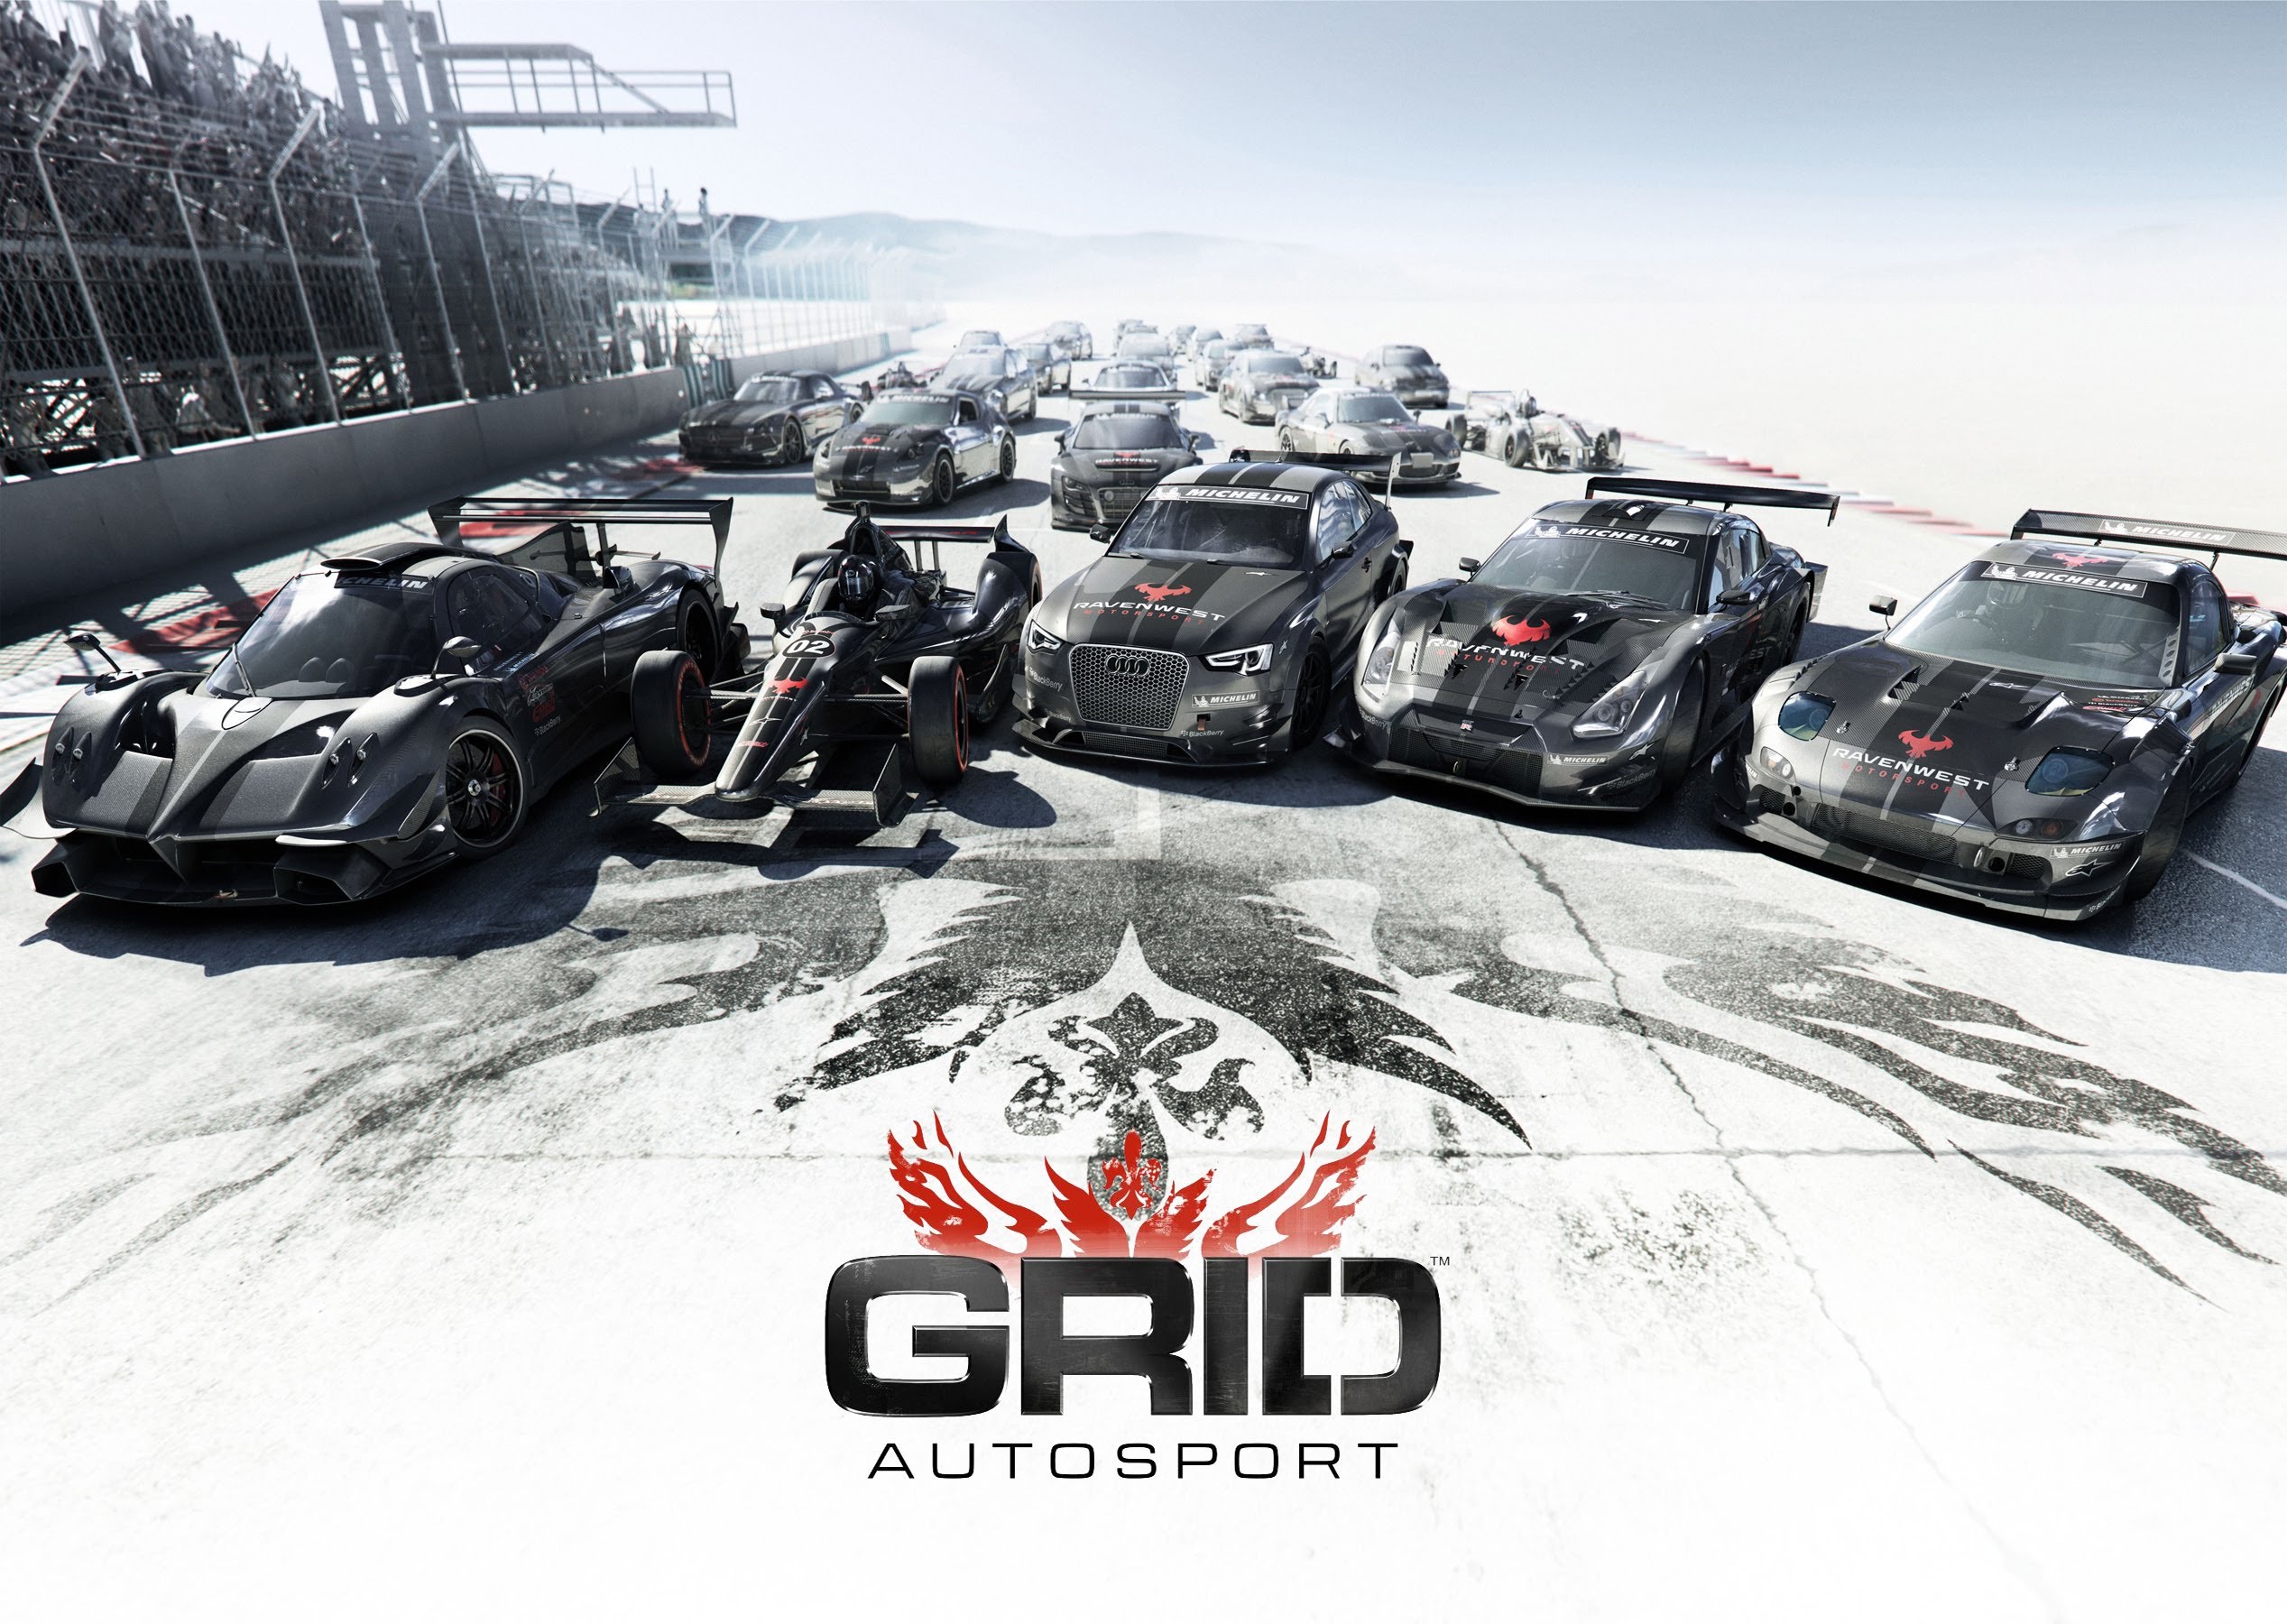 720p grid autosport backgrounds